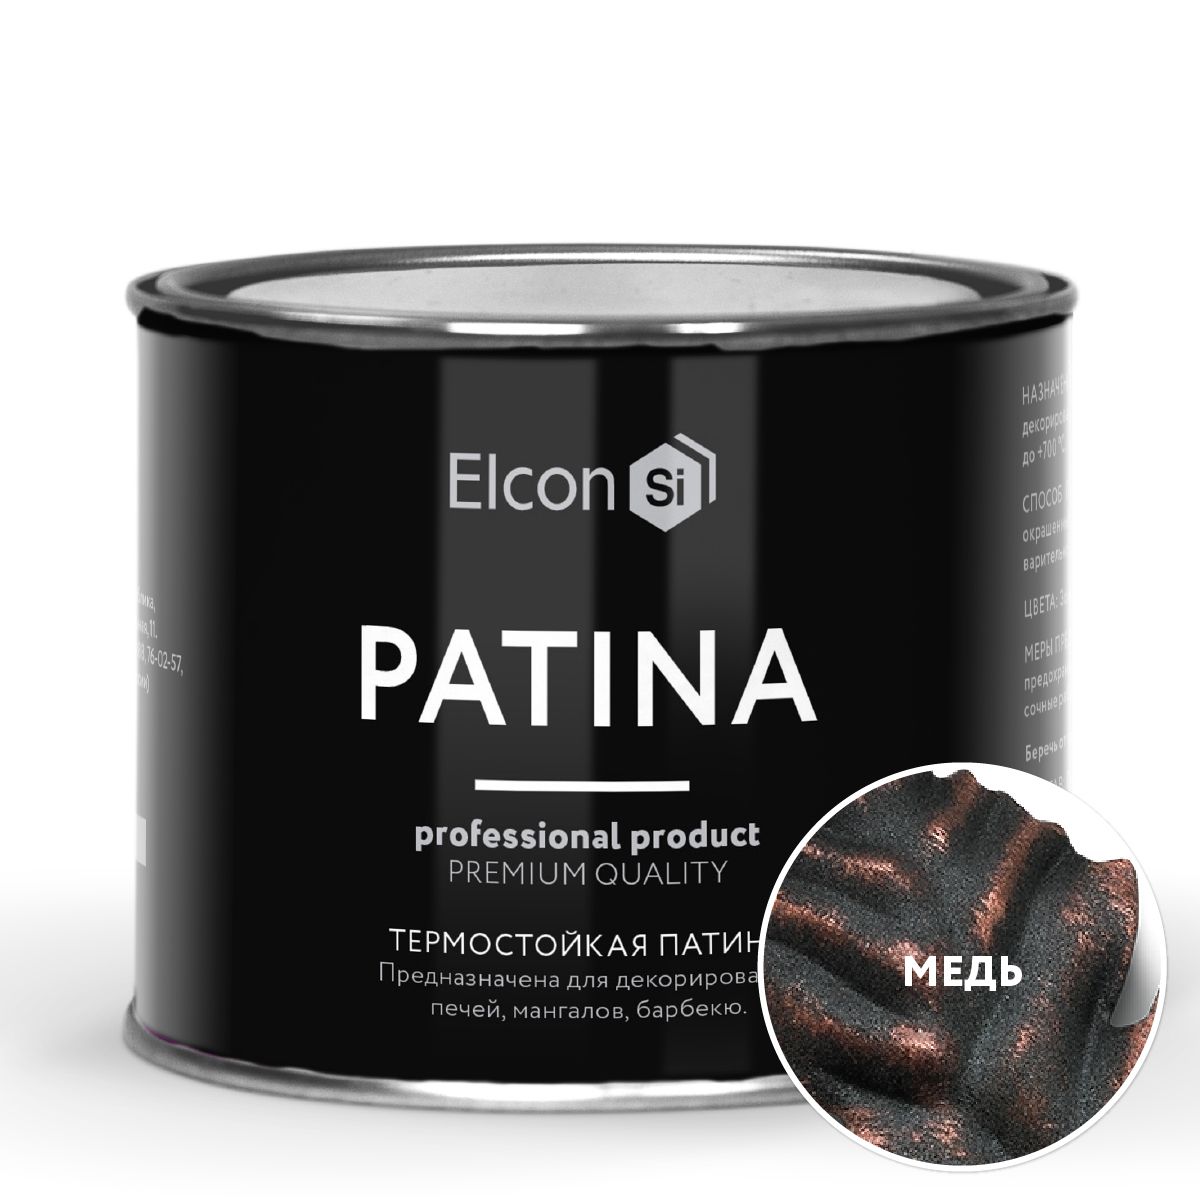 Термостойкая патина Elcon Patina + 700 градусов Медь 0,2 кг tremont patina velvet sterling диван